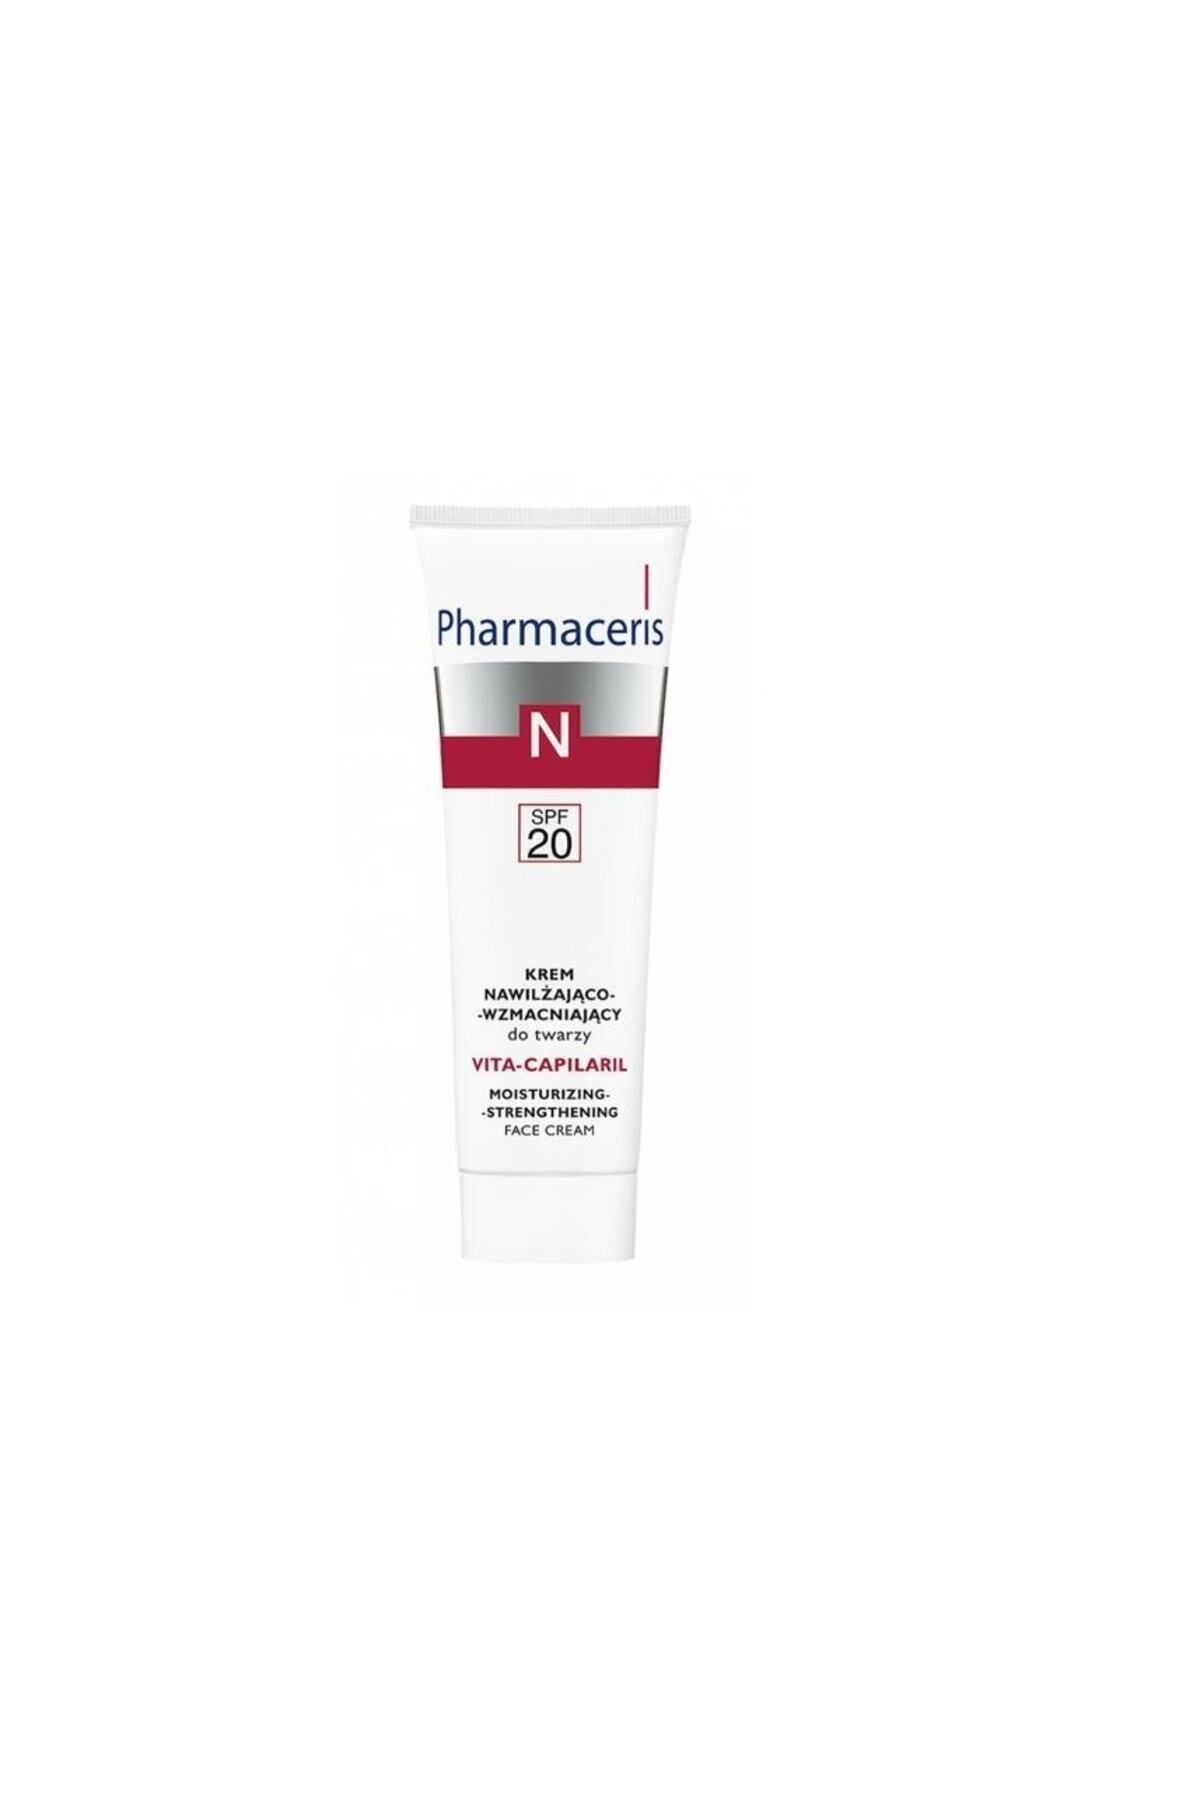 Pharmaceris N Vita-capilaril Spf 20 Moisturizing Strengthening Face Cream 50 ml